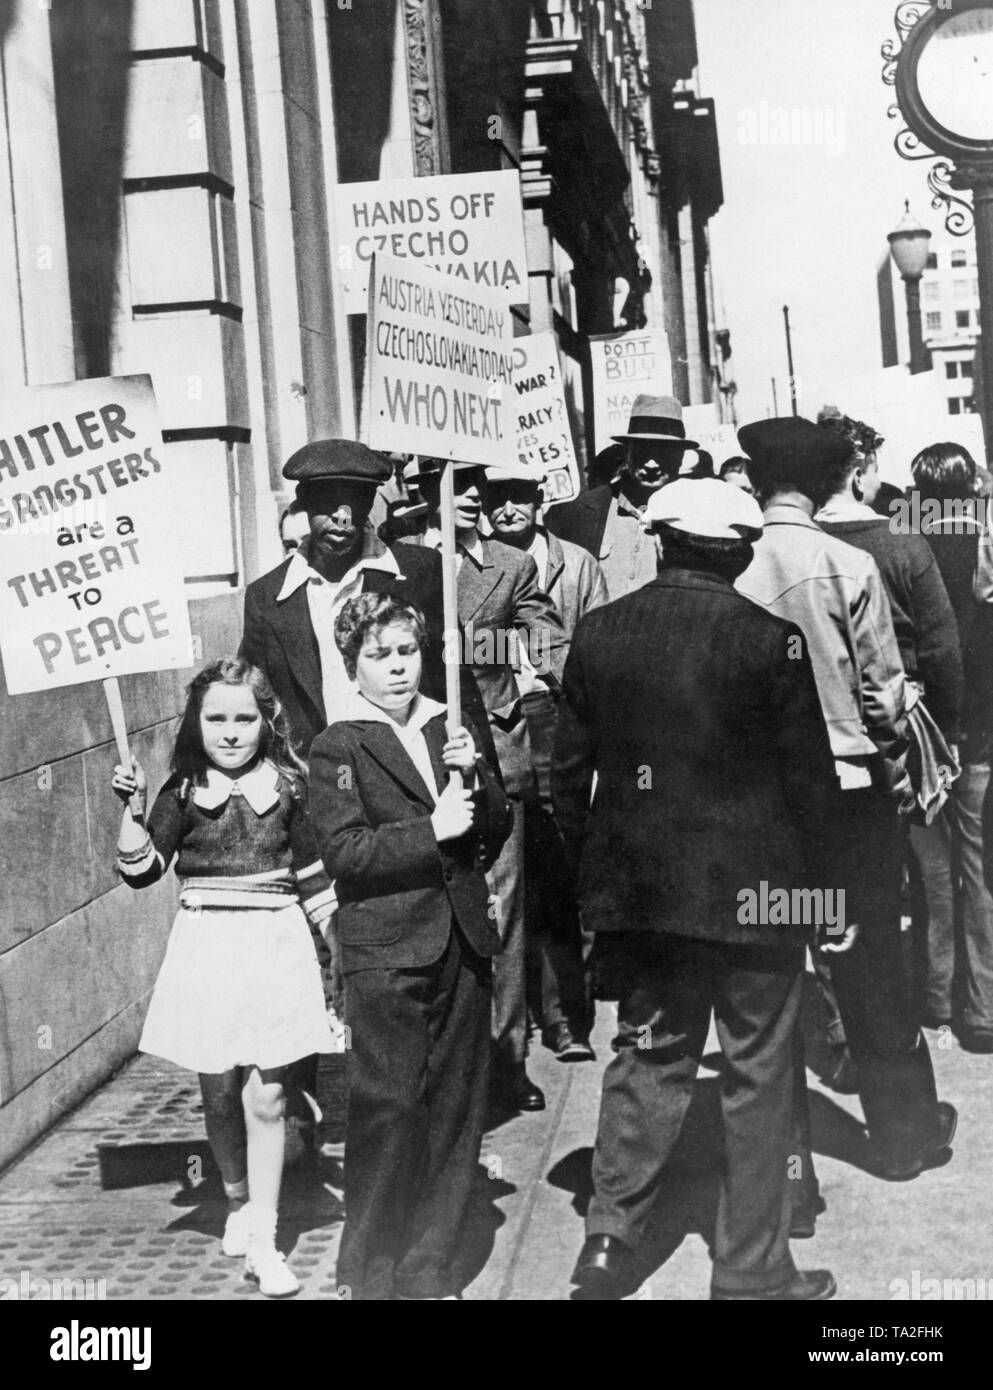 Tragen Kinder Schildern an einer Anti-nazi-Demonstration in San Francisco. Auf den Schildern: "Hitlers Gangster sind eine Bedrohung für den Frieden", "Österreich gestern Tschechoslowakei heute, die Nächsten." und "Hände weg von Tschechoslowakei". Im Sudetenland Krise, Hitler provoziert einen internationalen Konflikt des Sudetenlandes an das Deutsche Reich zu Anhang. Stockfoto